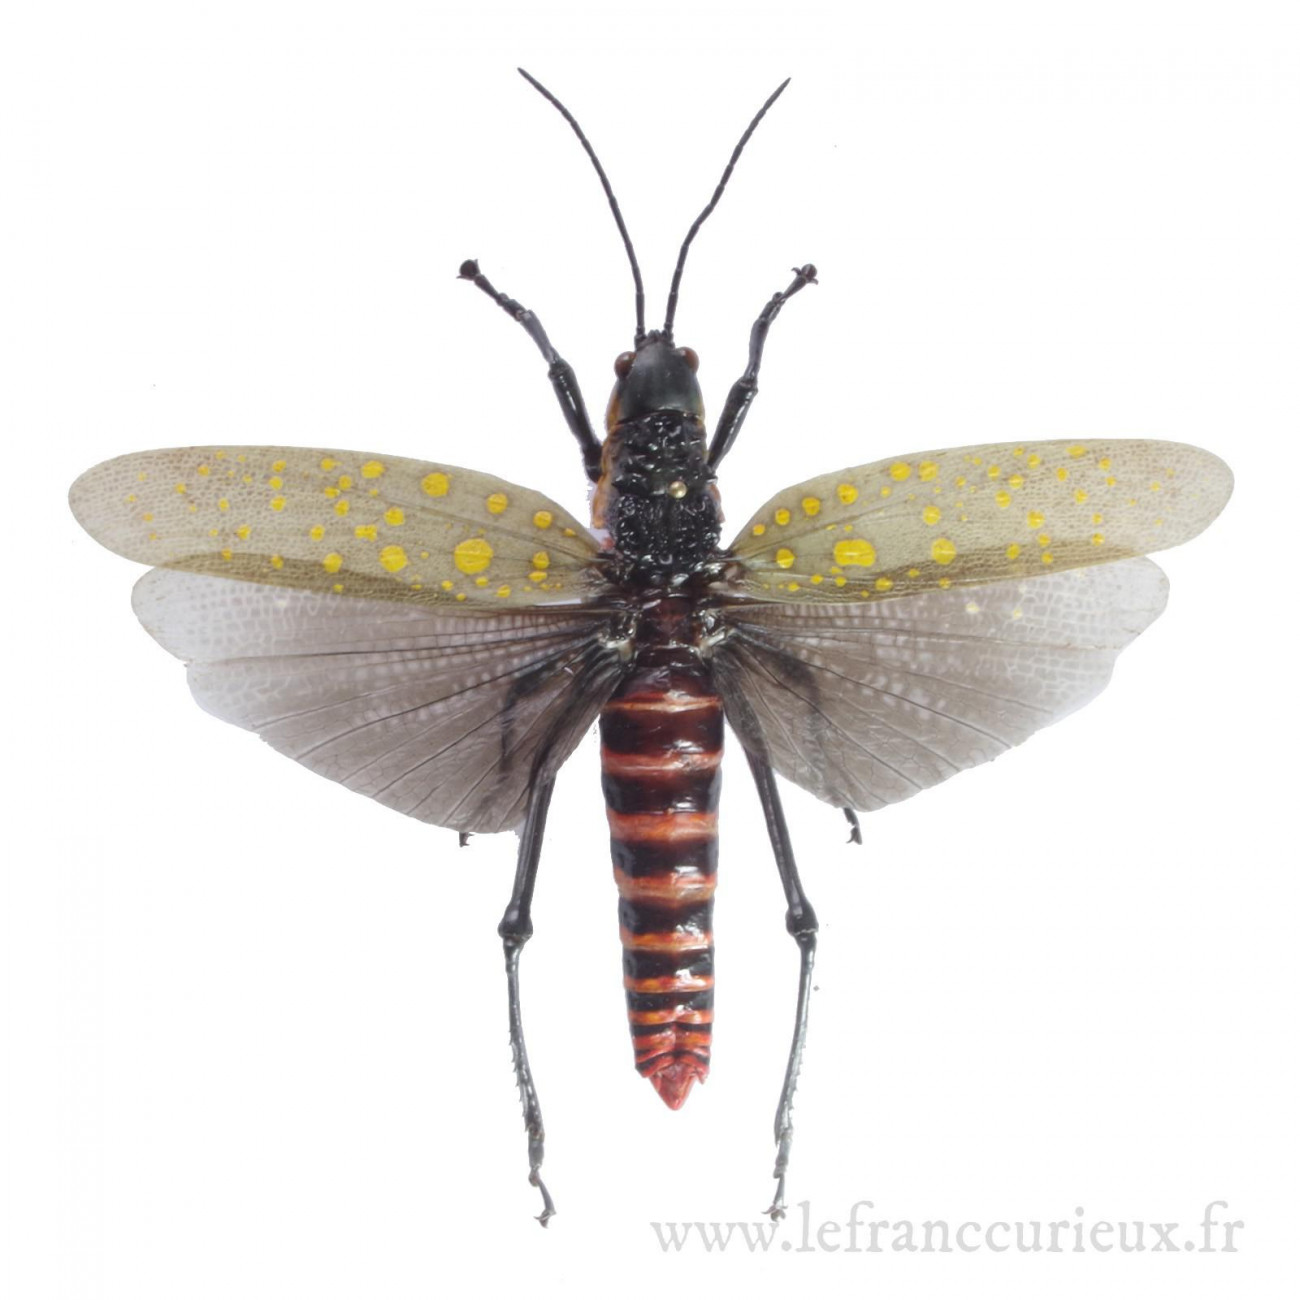 Entomologie Insecte Collection Aularches punctatus mâle A1 d'Indonesie! 